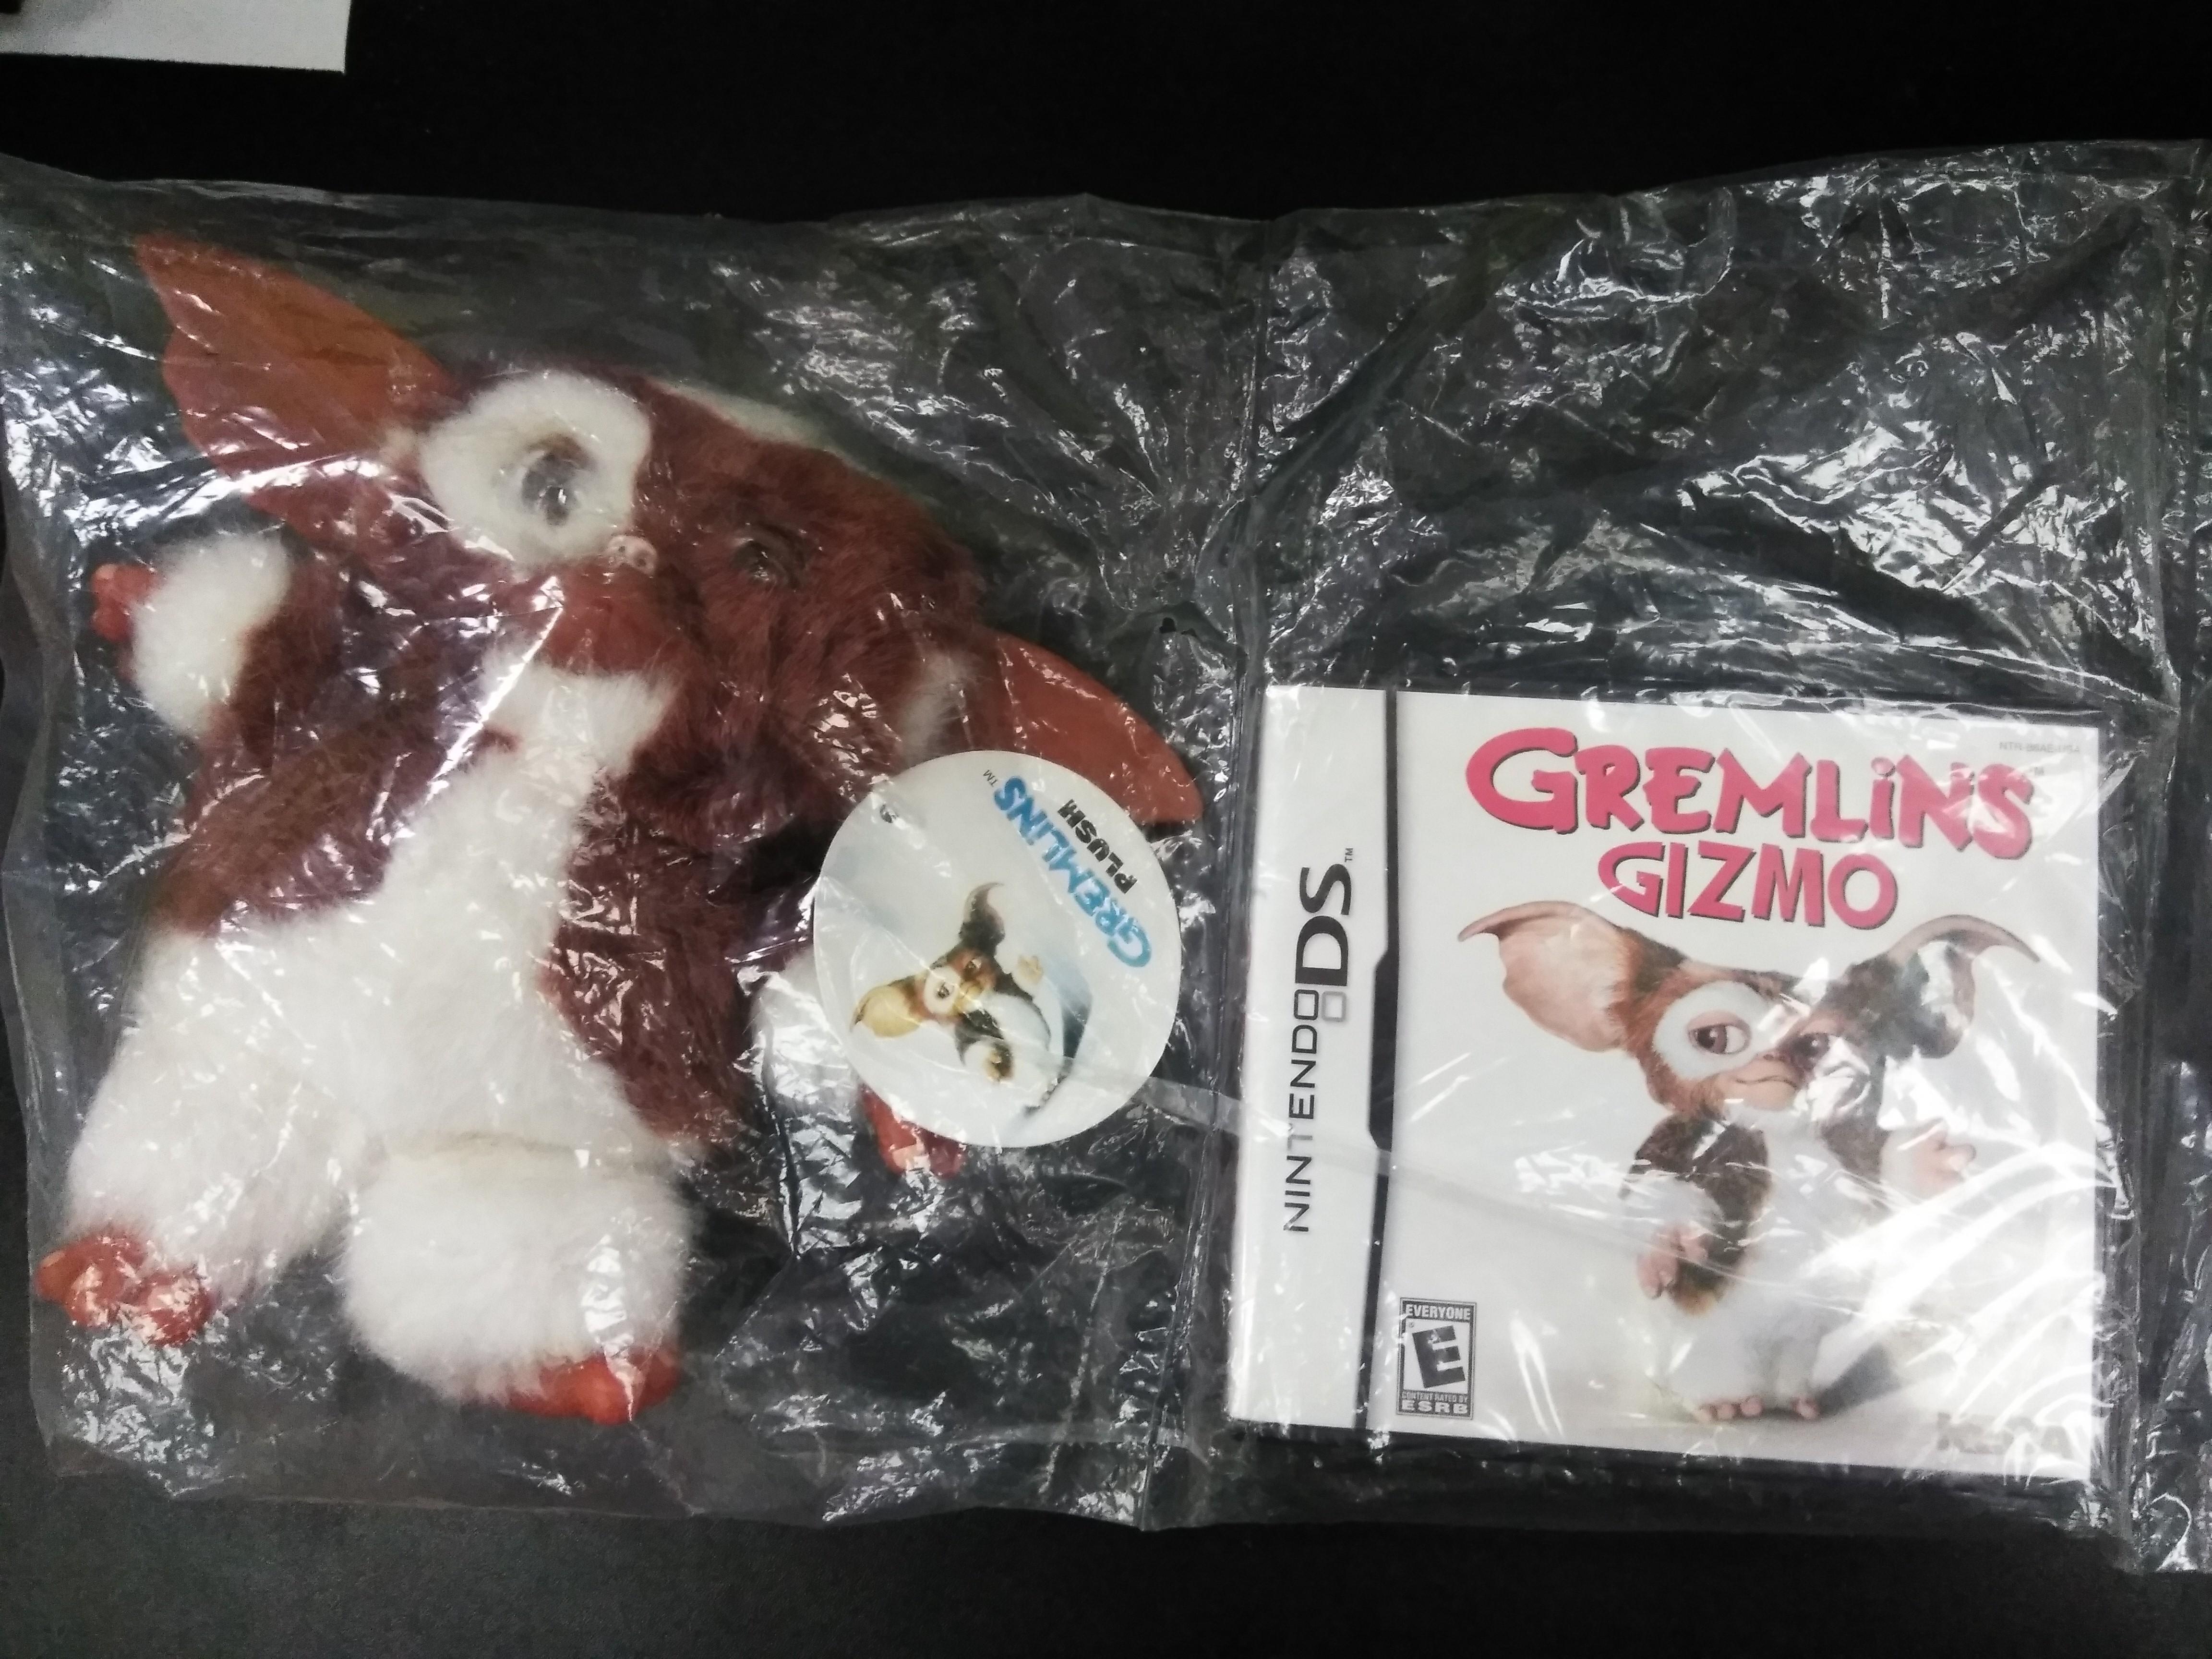 Fotografía de un pack con muñeco de peluche de Gizmo y el juego Gremlins Gizmo de Nintendo DS